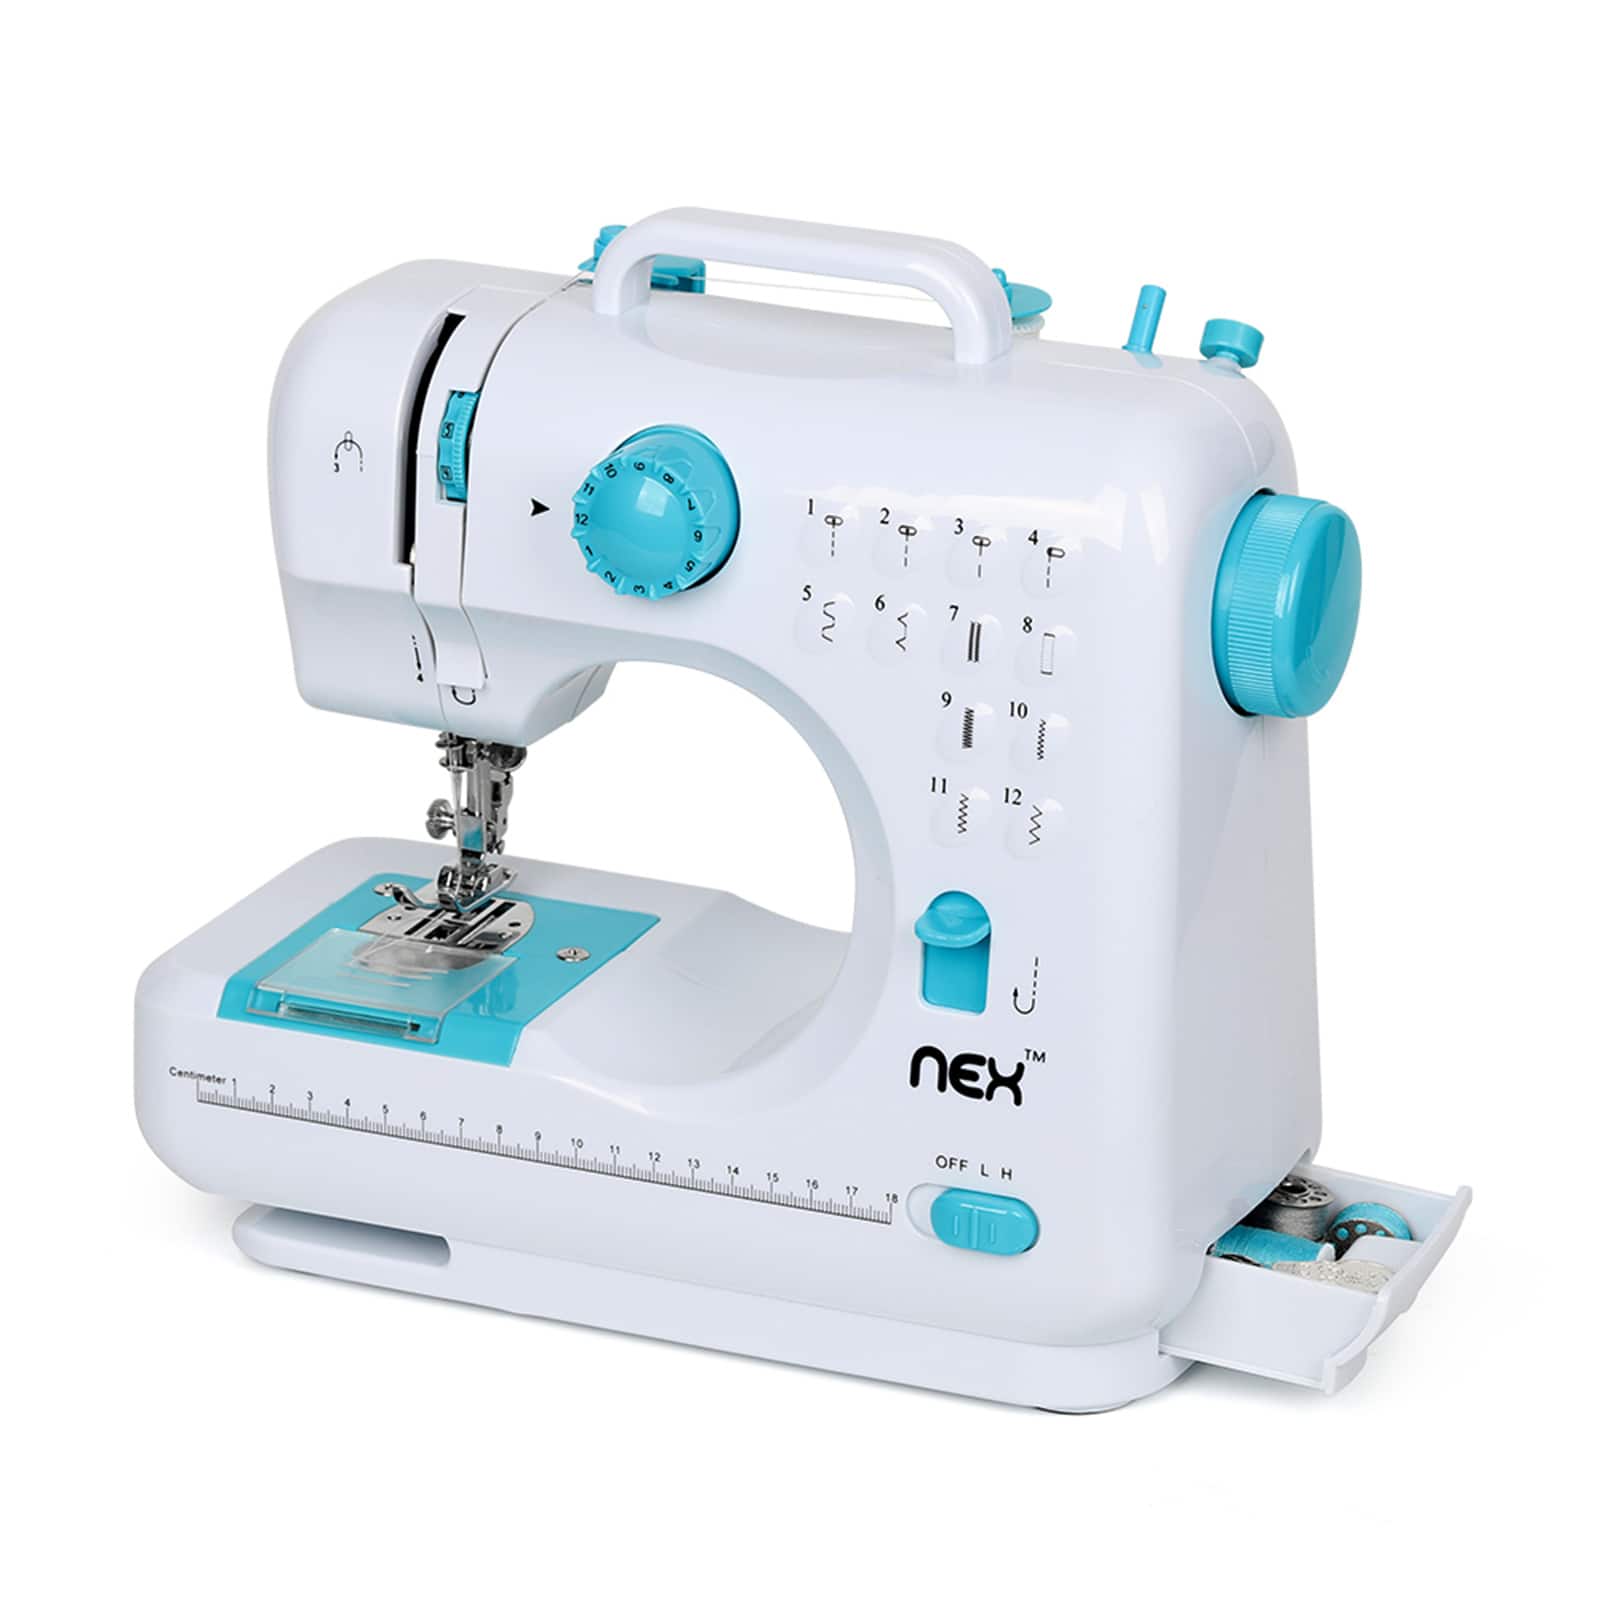 NEX™ Indigo Blue Modern Crafting Sewing Machine with 12 Built-In Stitches - 2